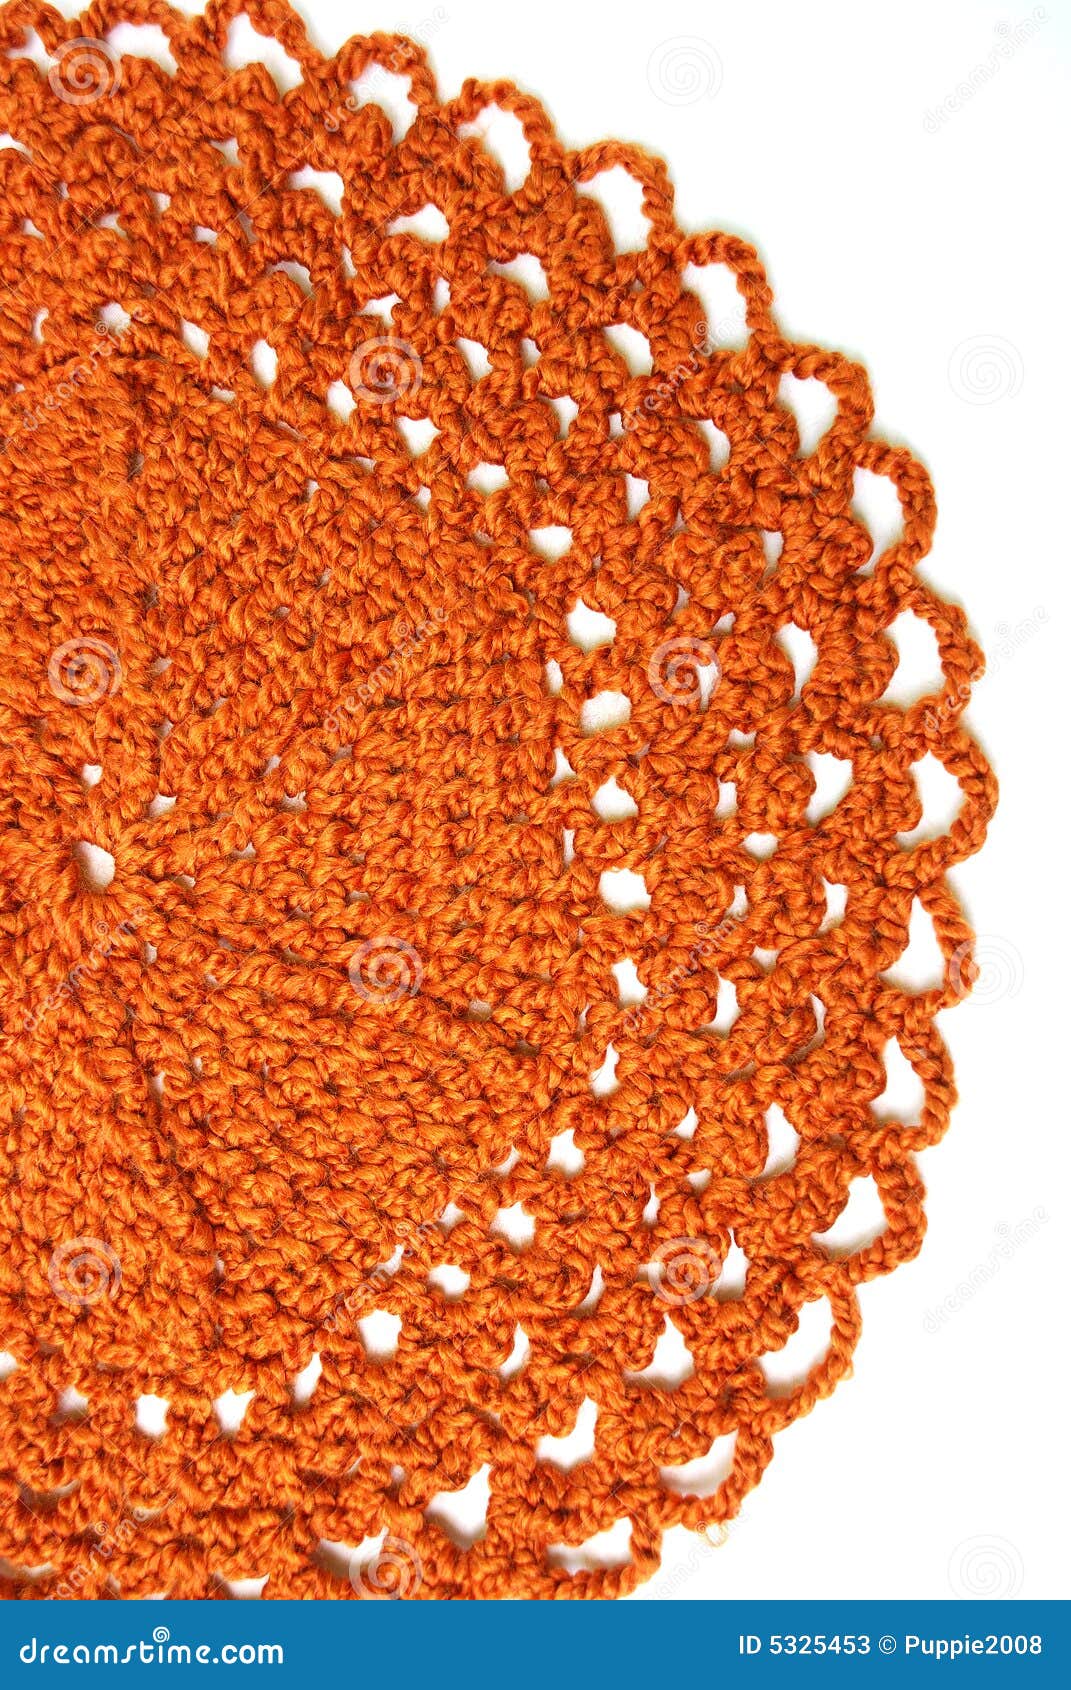 handmade orange crochet doily